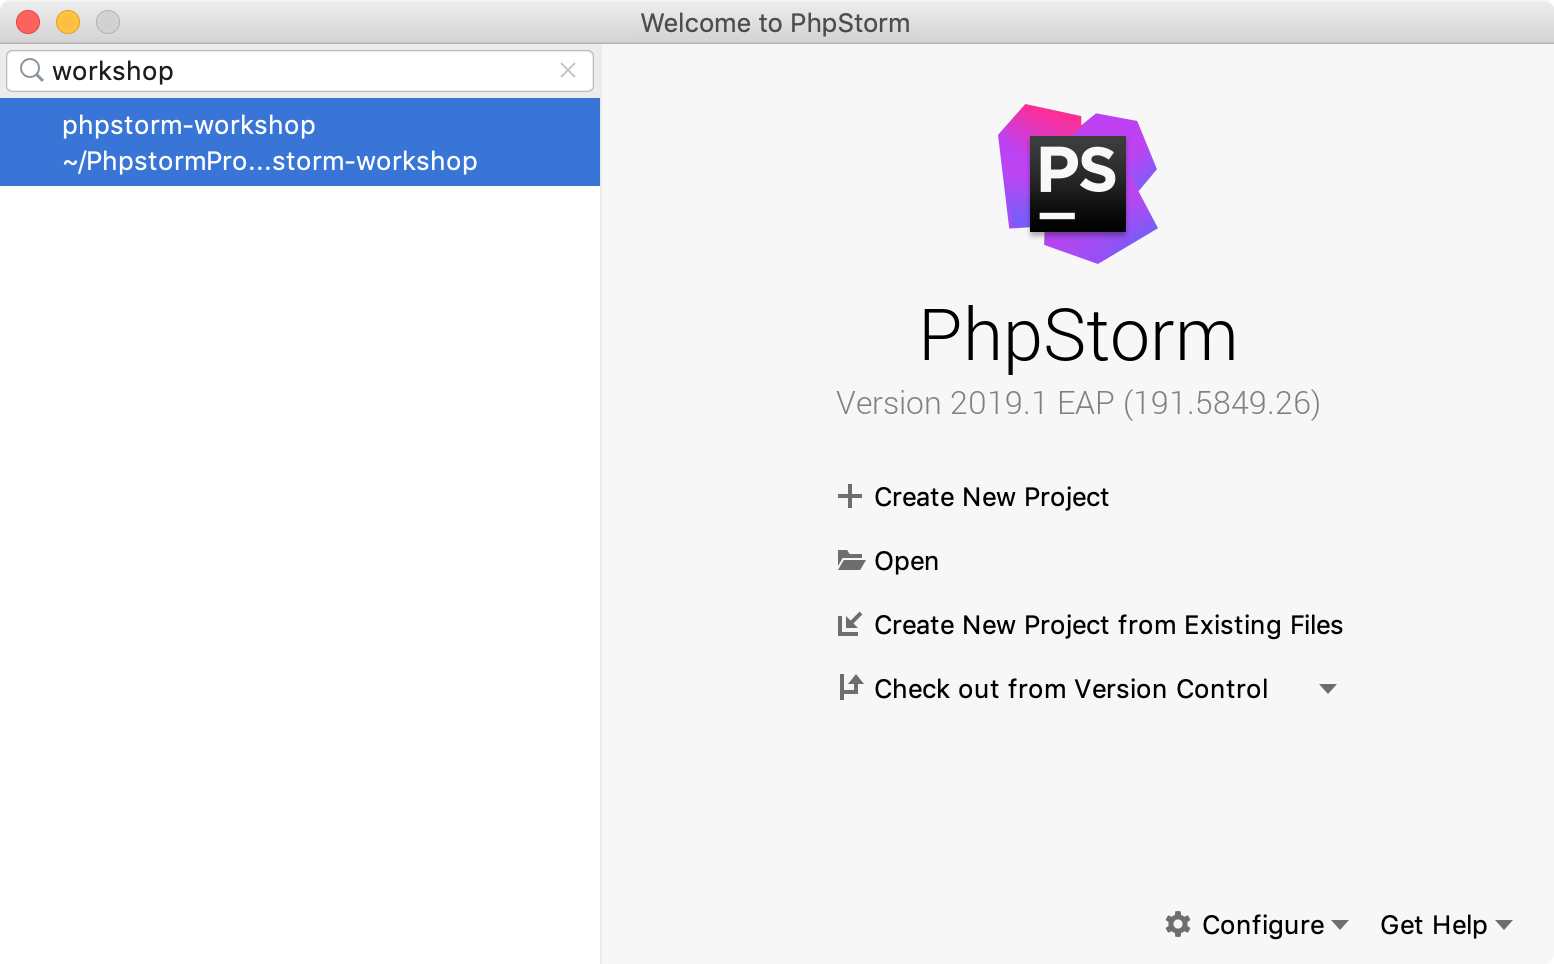 PhpStorm welcome screen